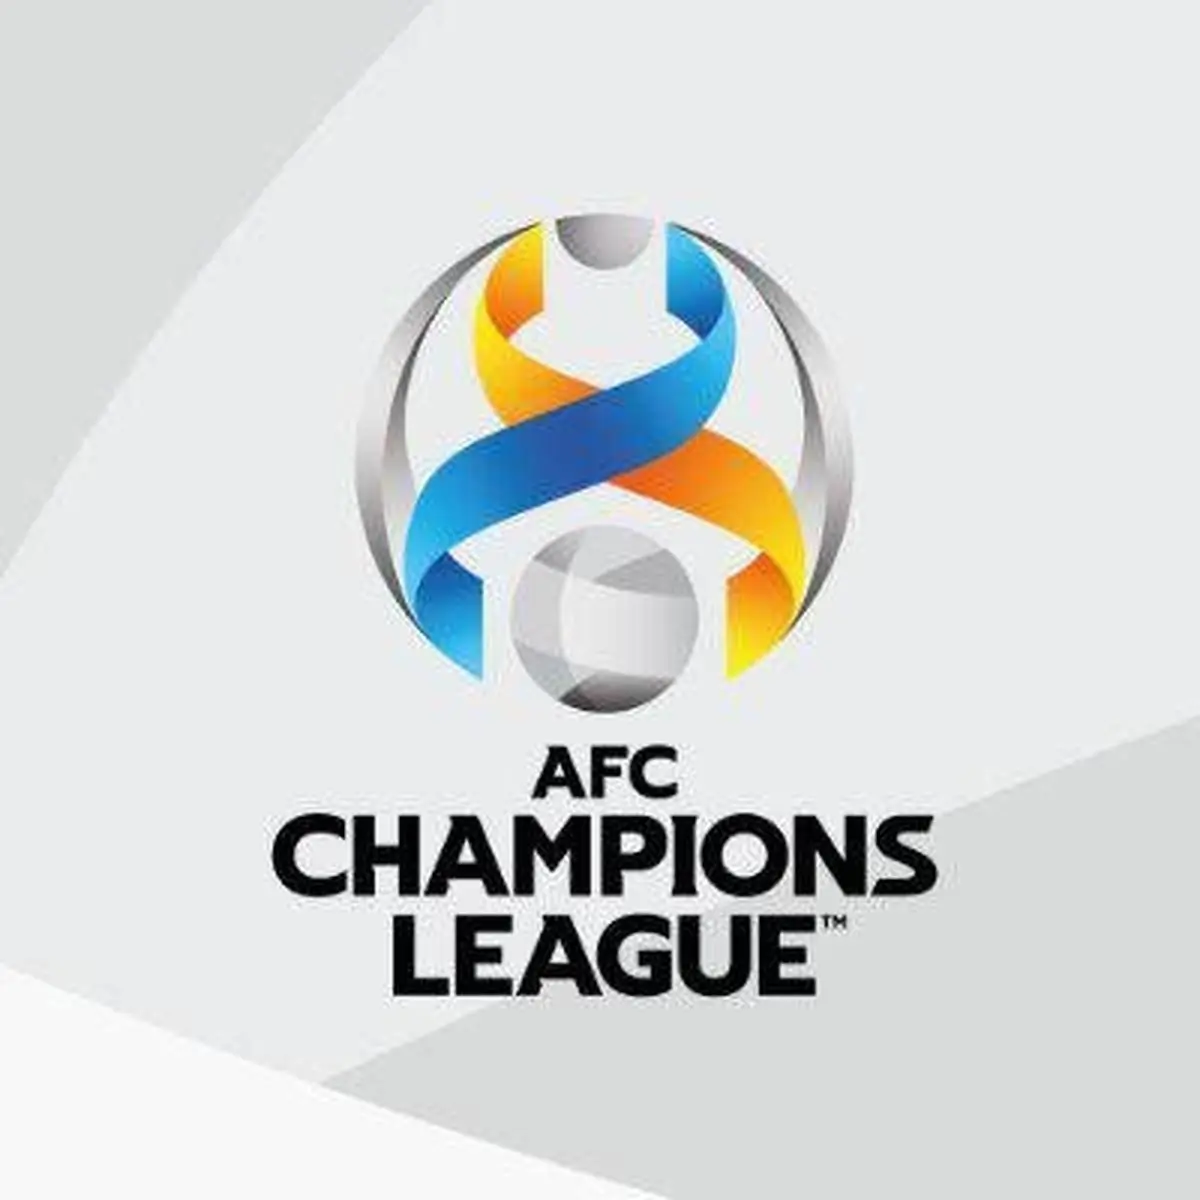  ۴ کشور برای میزبانی لیگ قهرمانان آسیا داوطلب شدند
